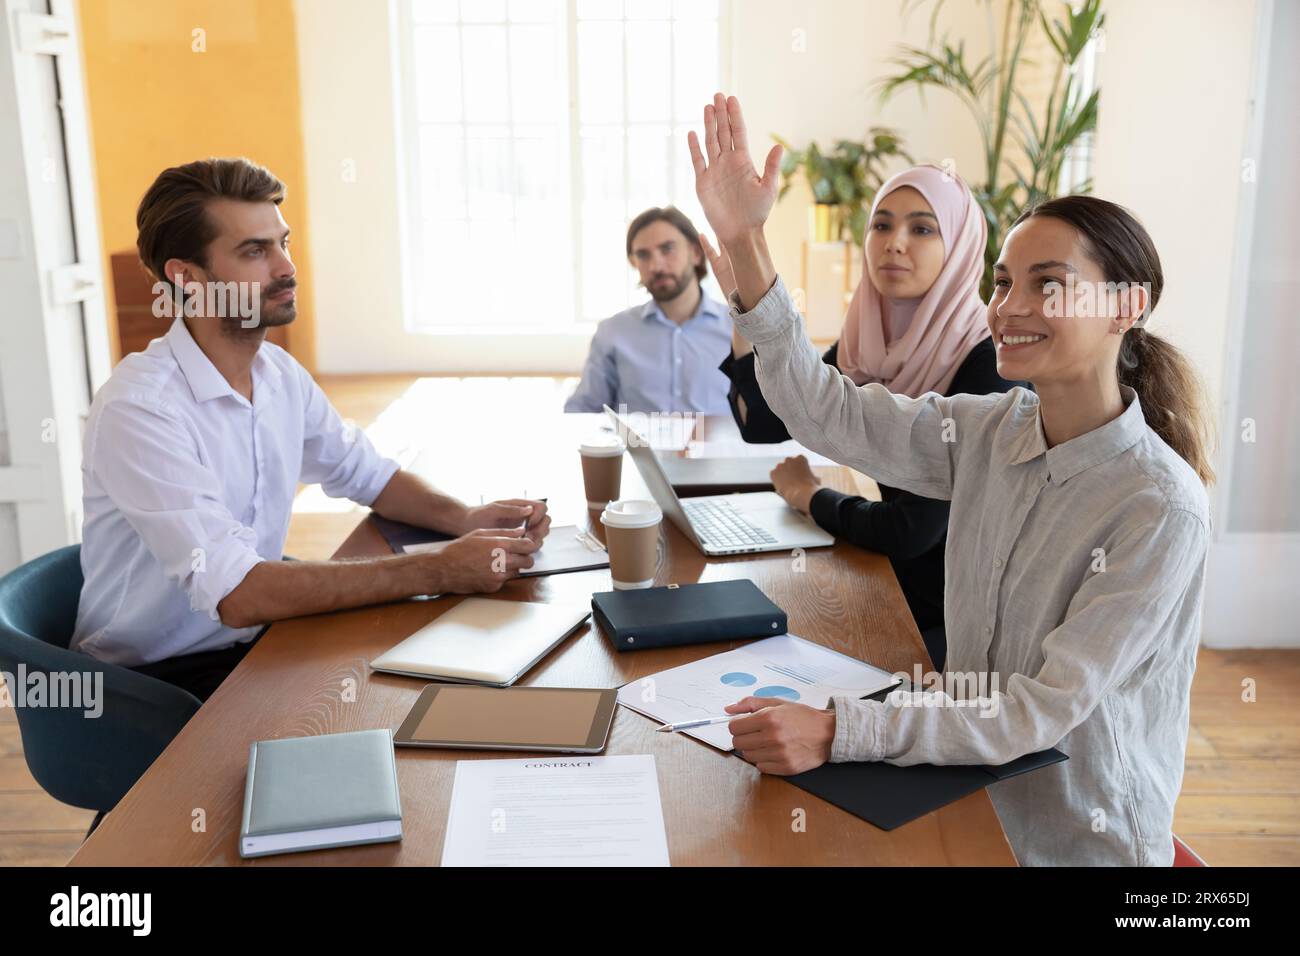 Birassische und arabische Frauen, die Hand heben und Fragen beim Seminar stellen Stockfoto